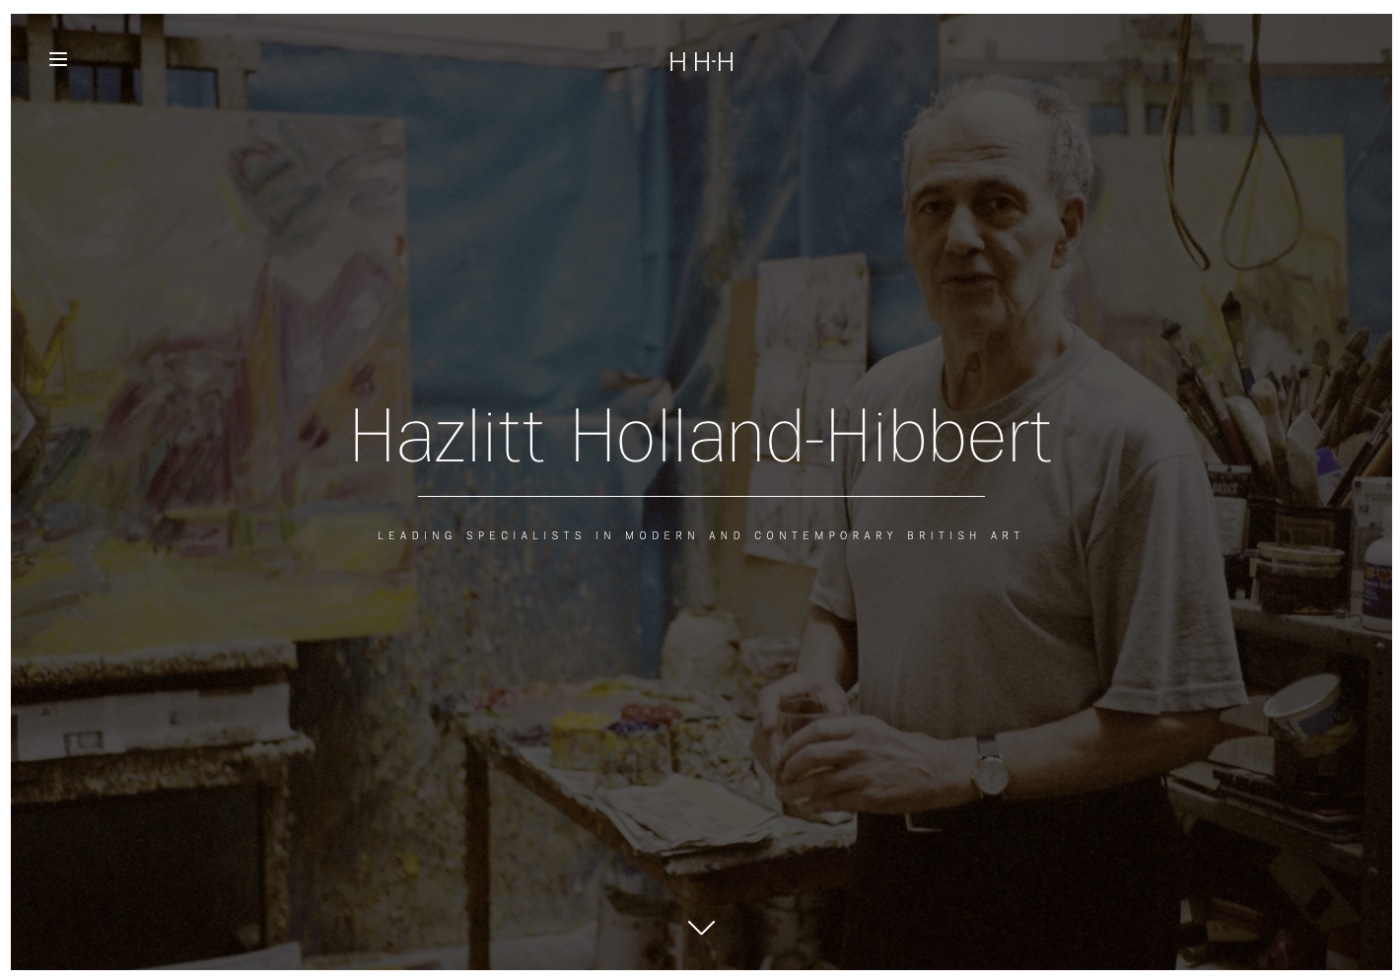 Hazlitt Holland-Hibbert